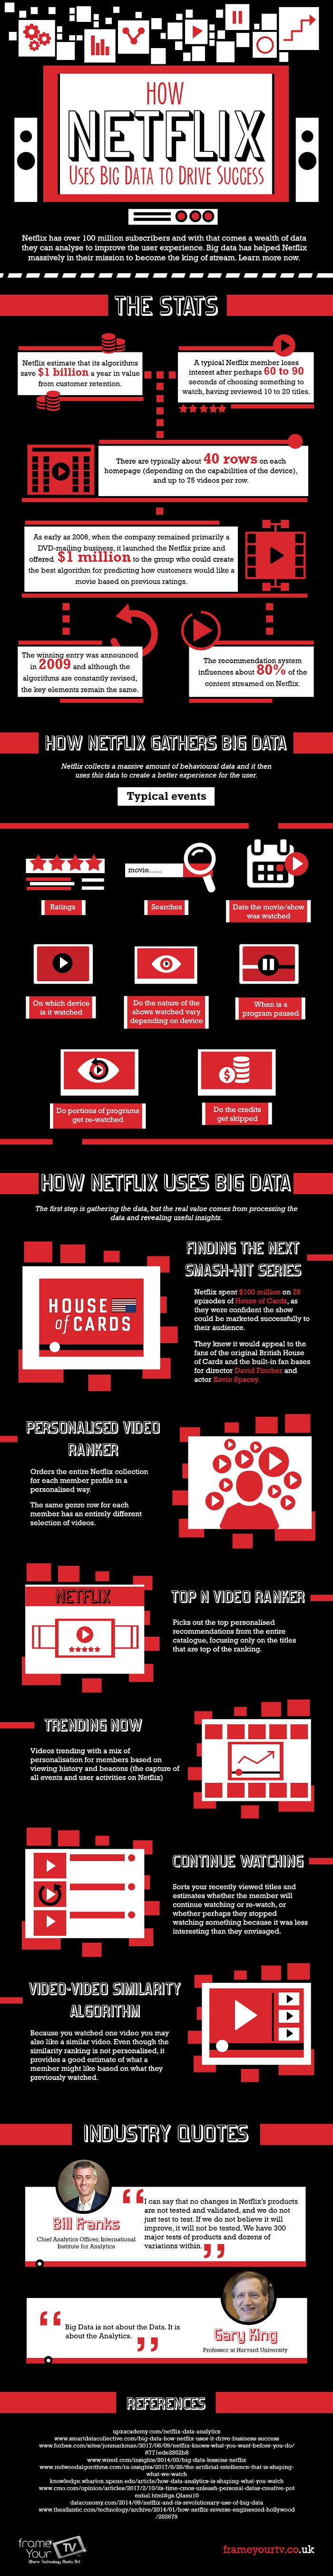 De ce datele mari sunt importante pentru Netflix?